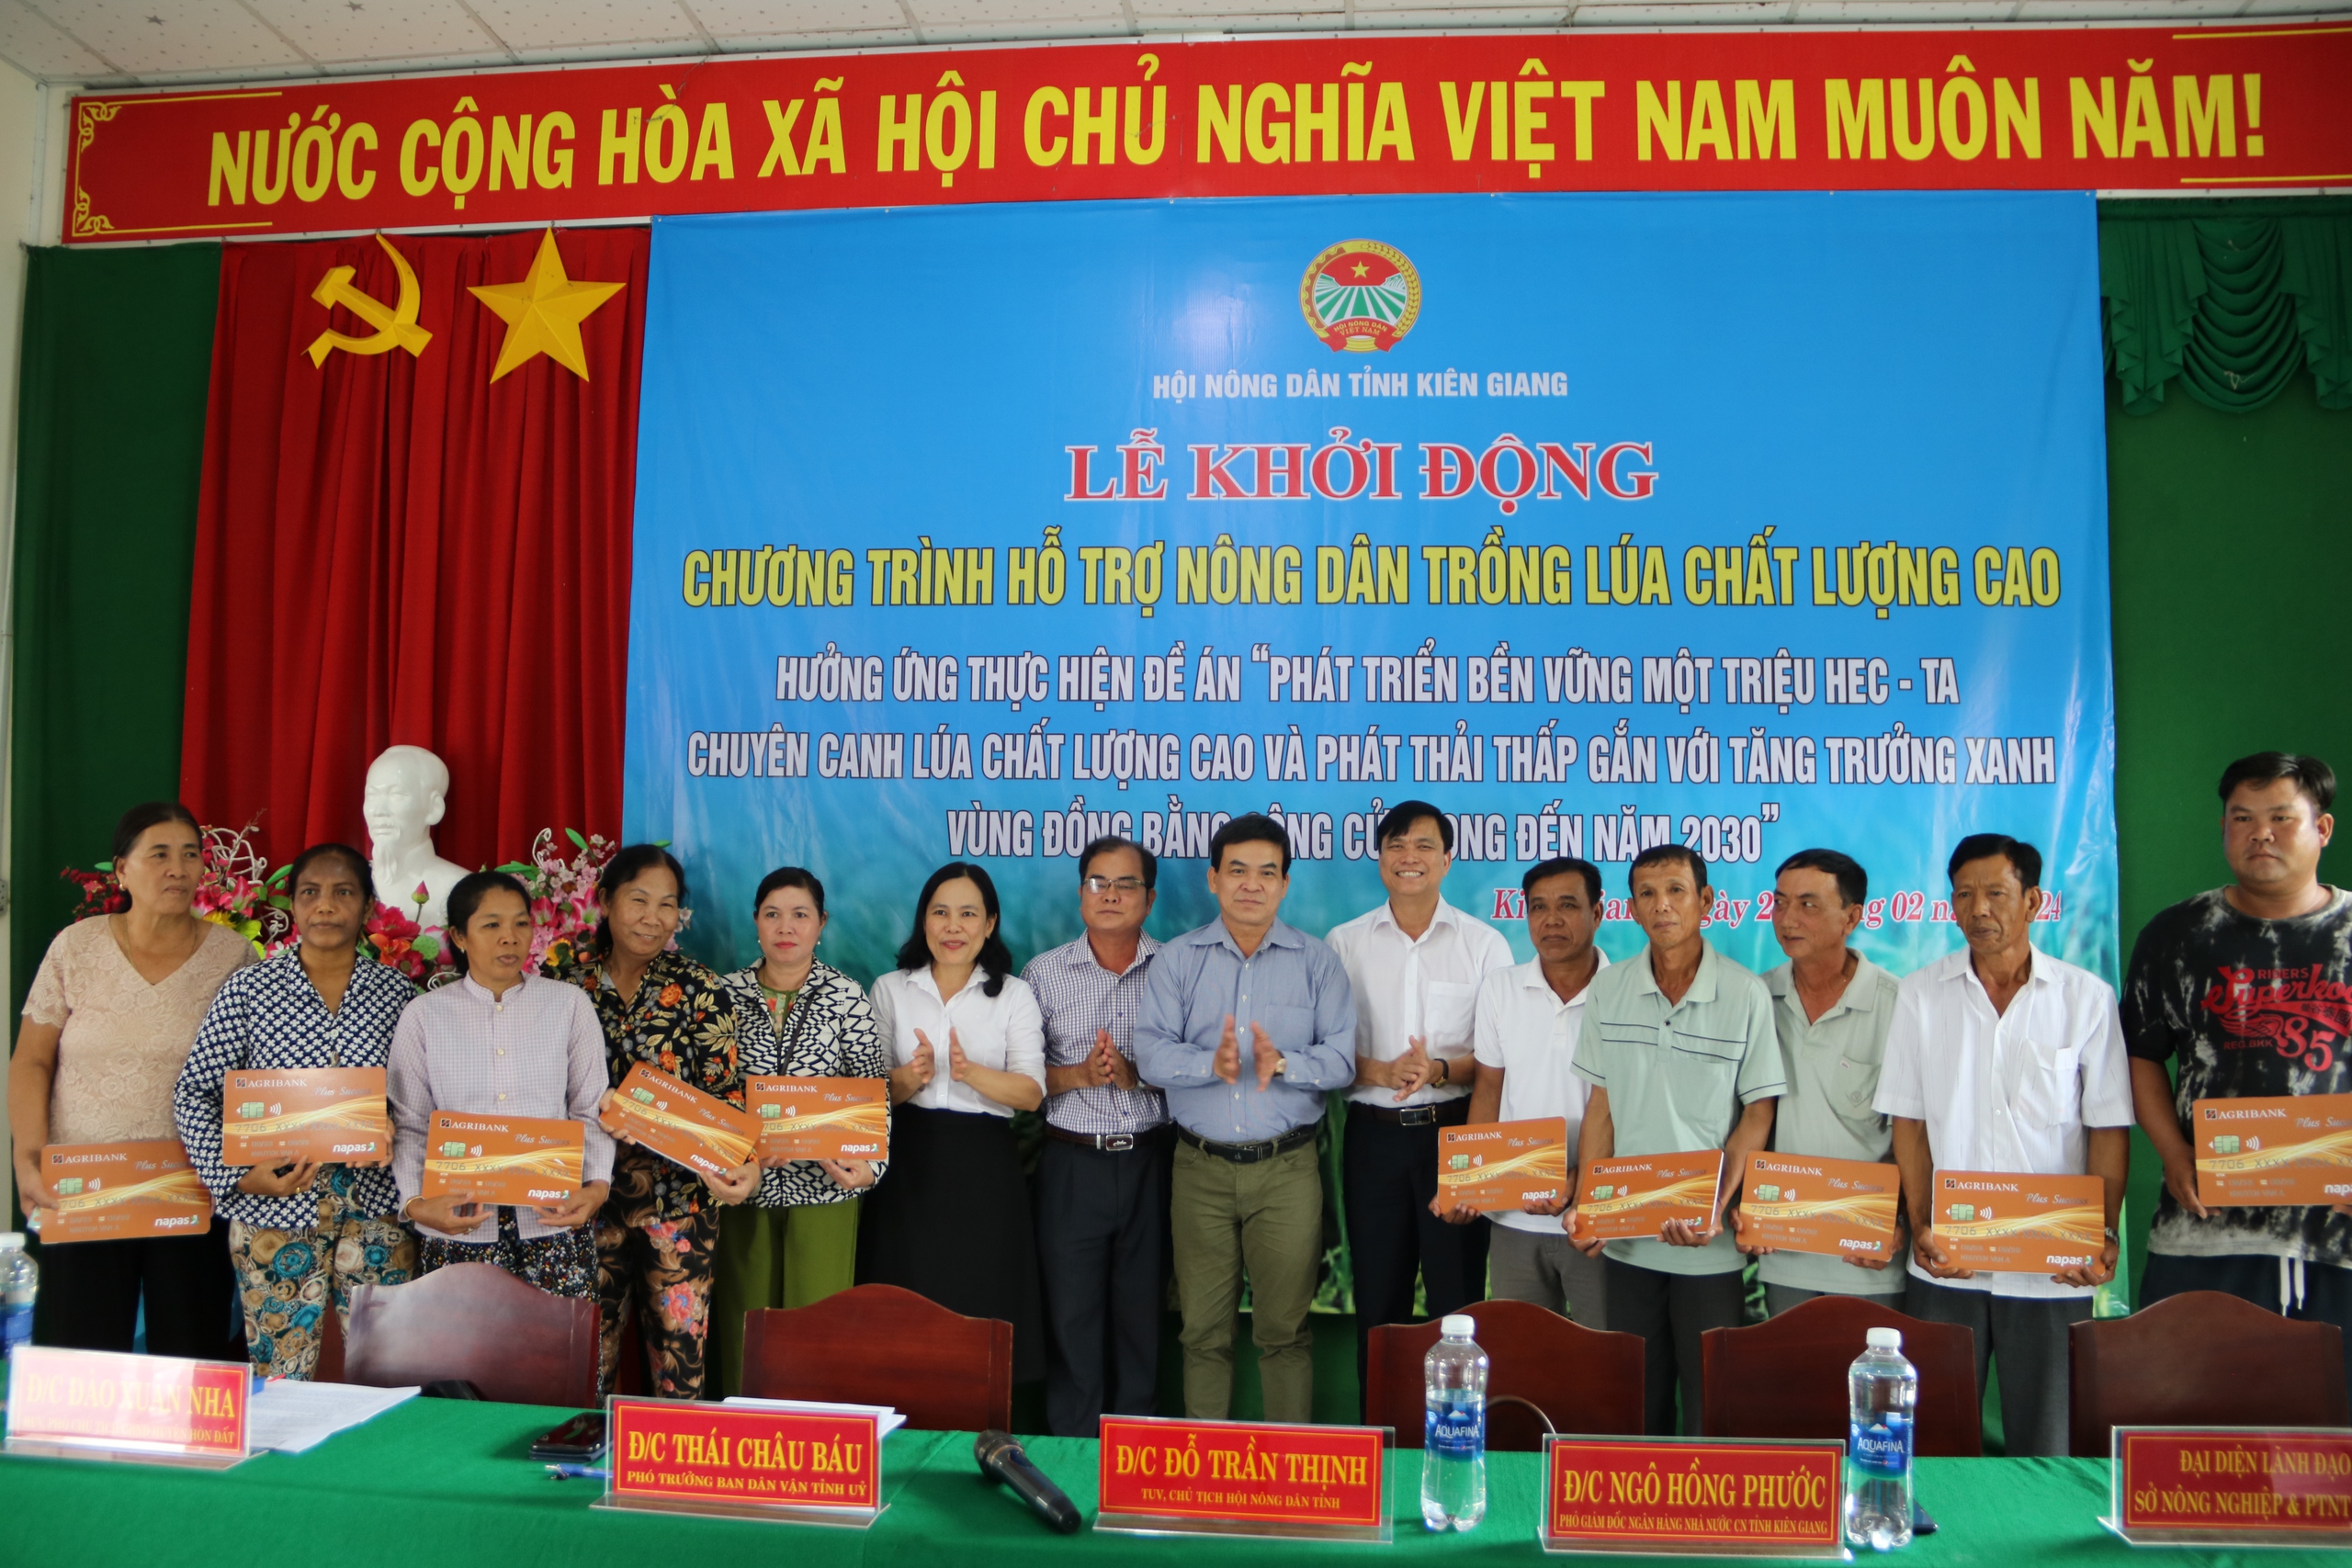 Hội Nông dân Kiên Giang giải ngân 500 triệu đồng cho hội viên tham gia dự án “Trồng lúa chất lượng cao”- Ảnh 4.